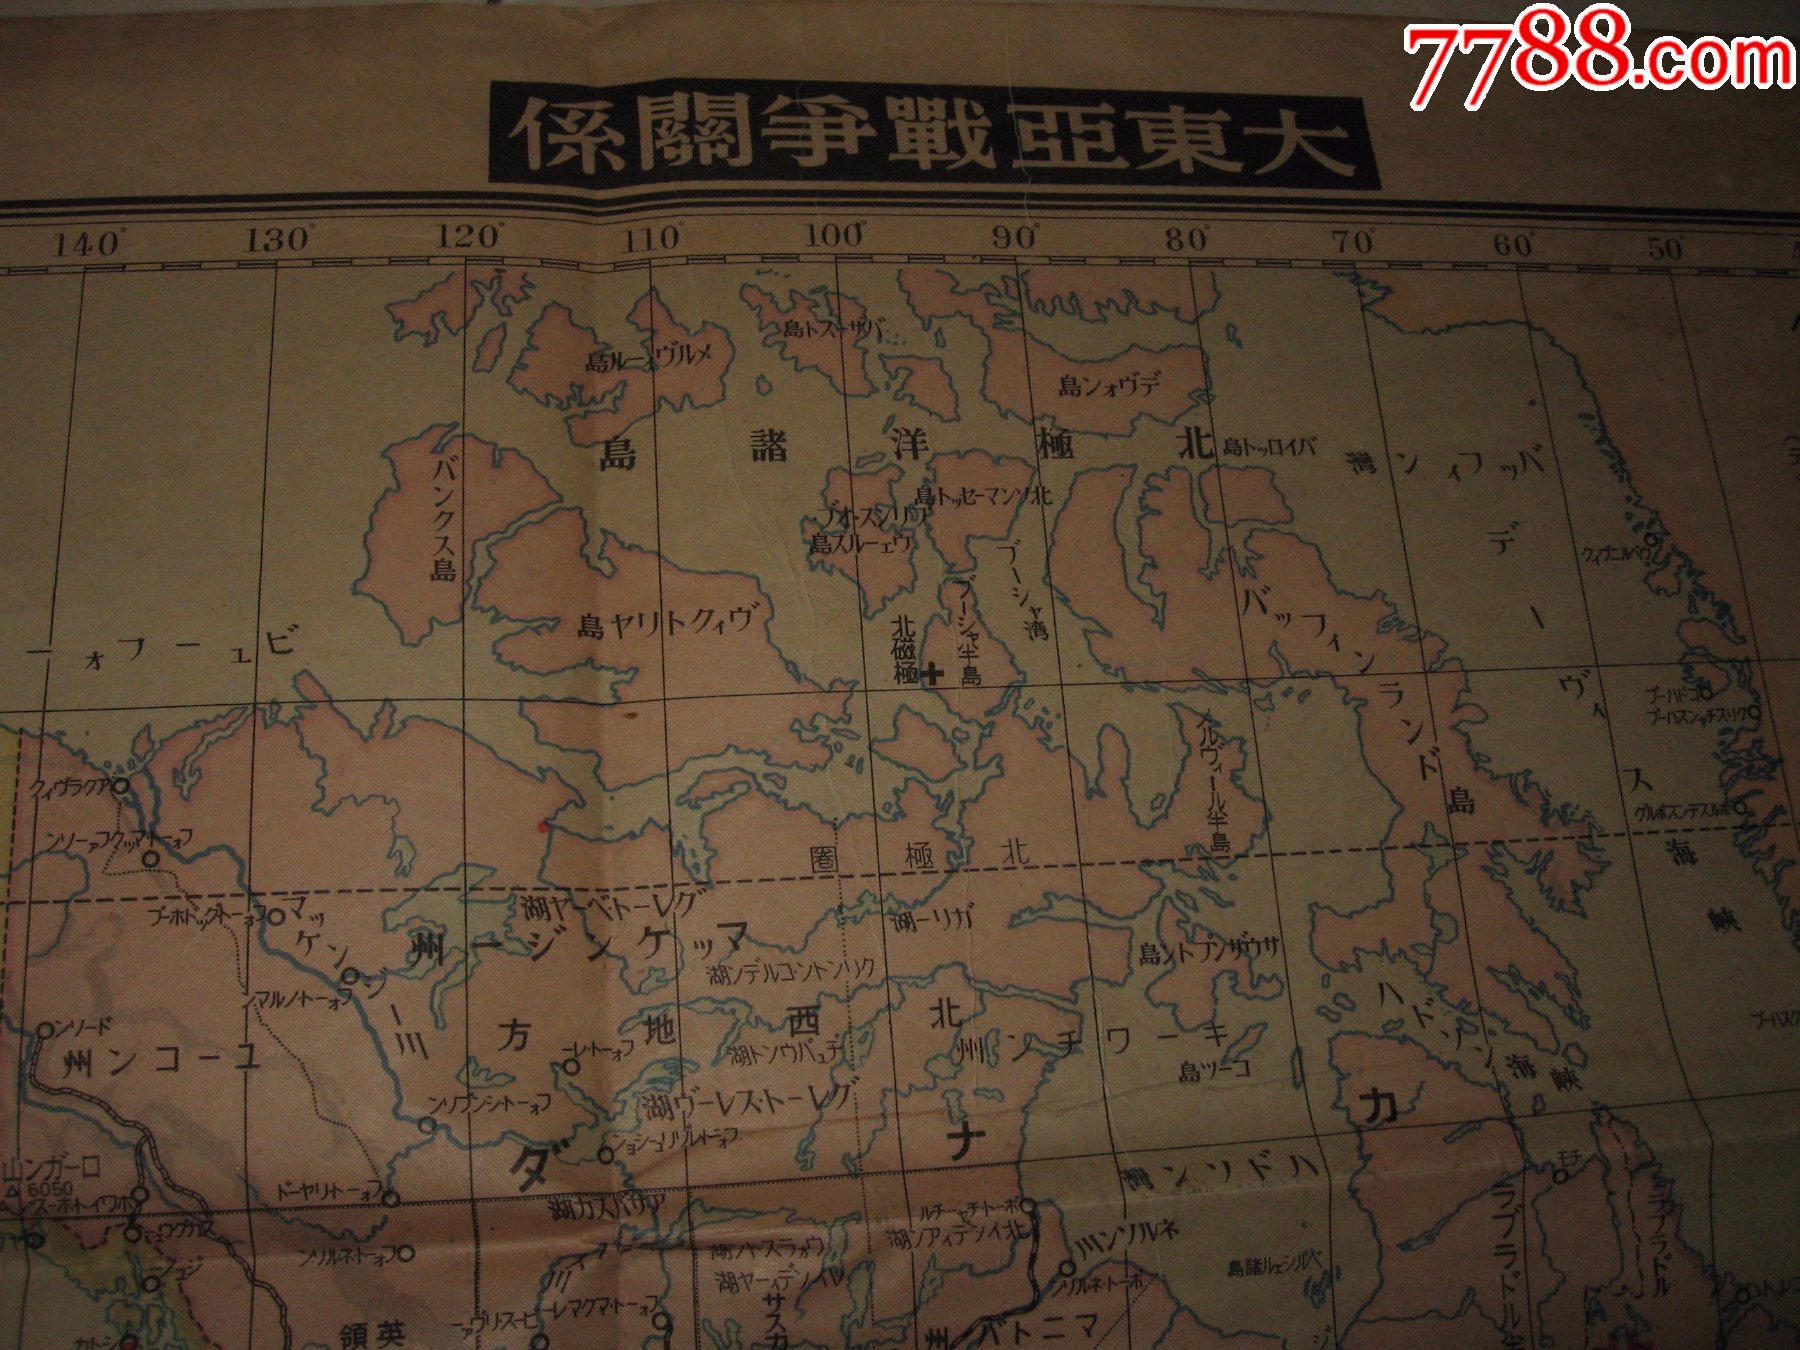 日本侵华地图1942年《世界改新时局要图》大东亚战争关系地图